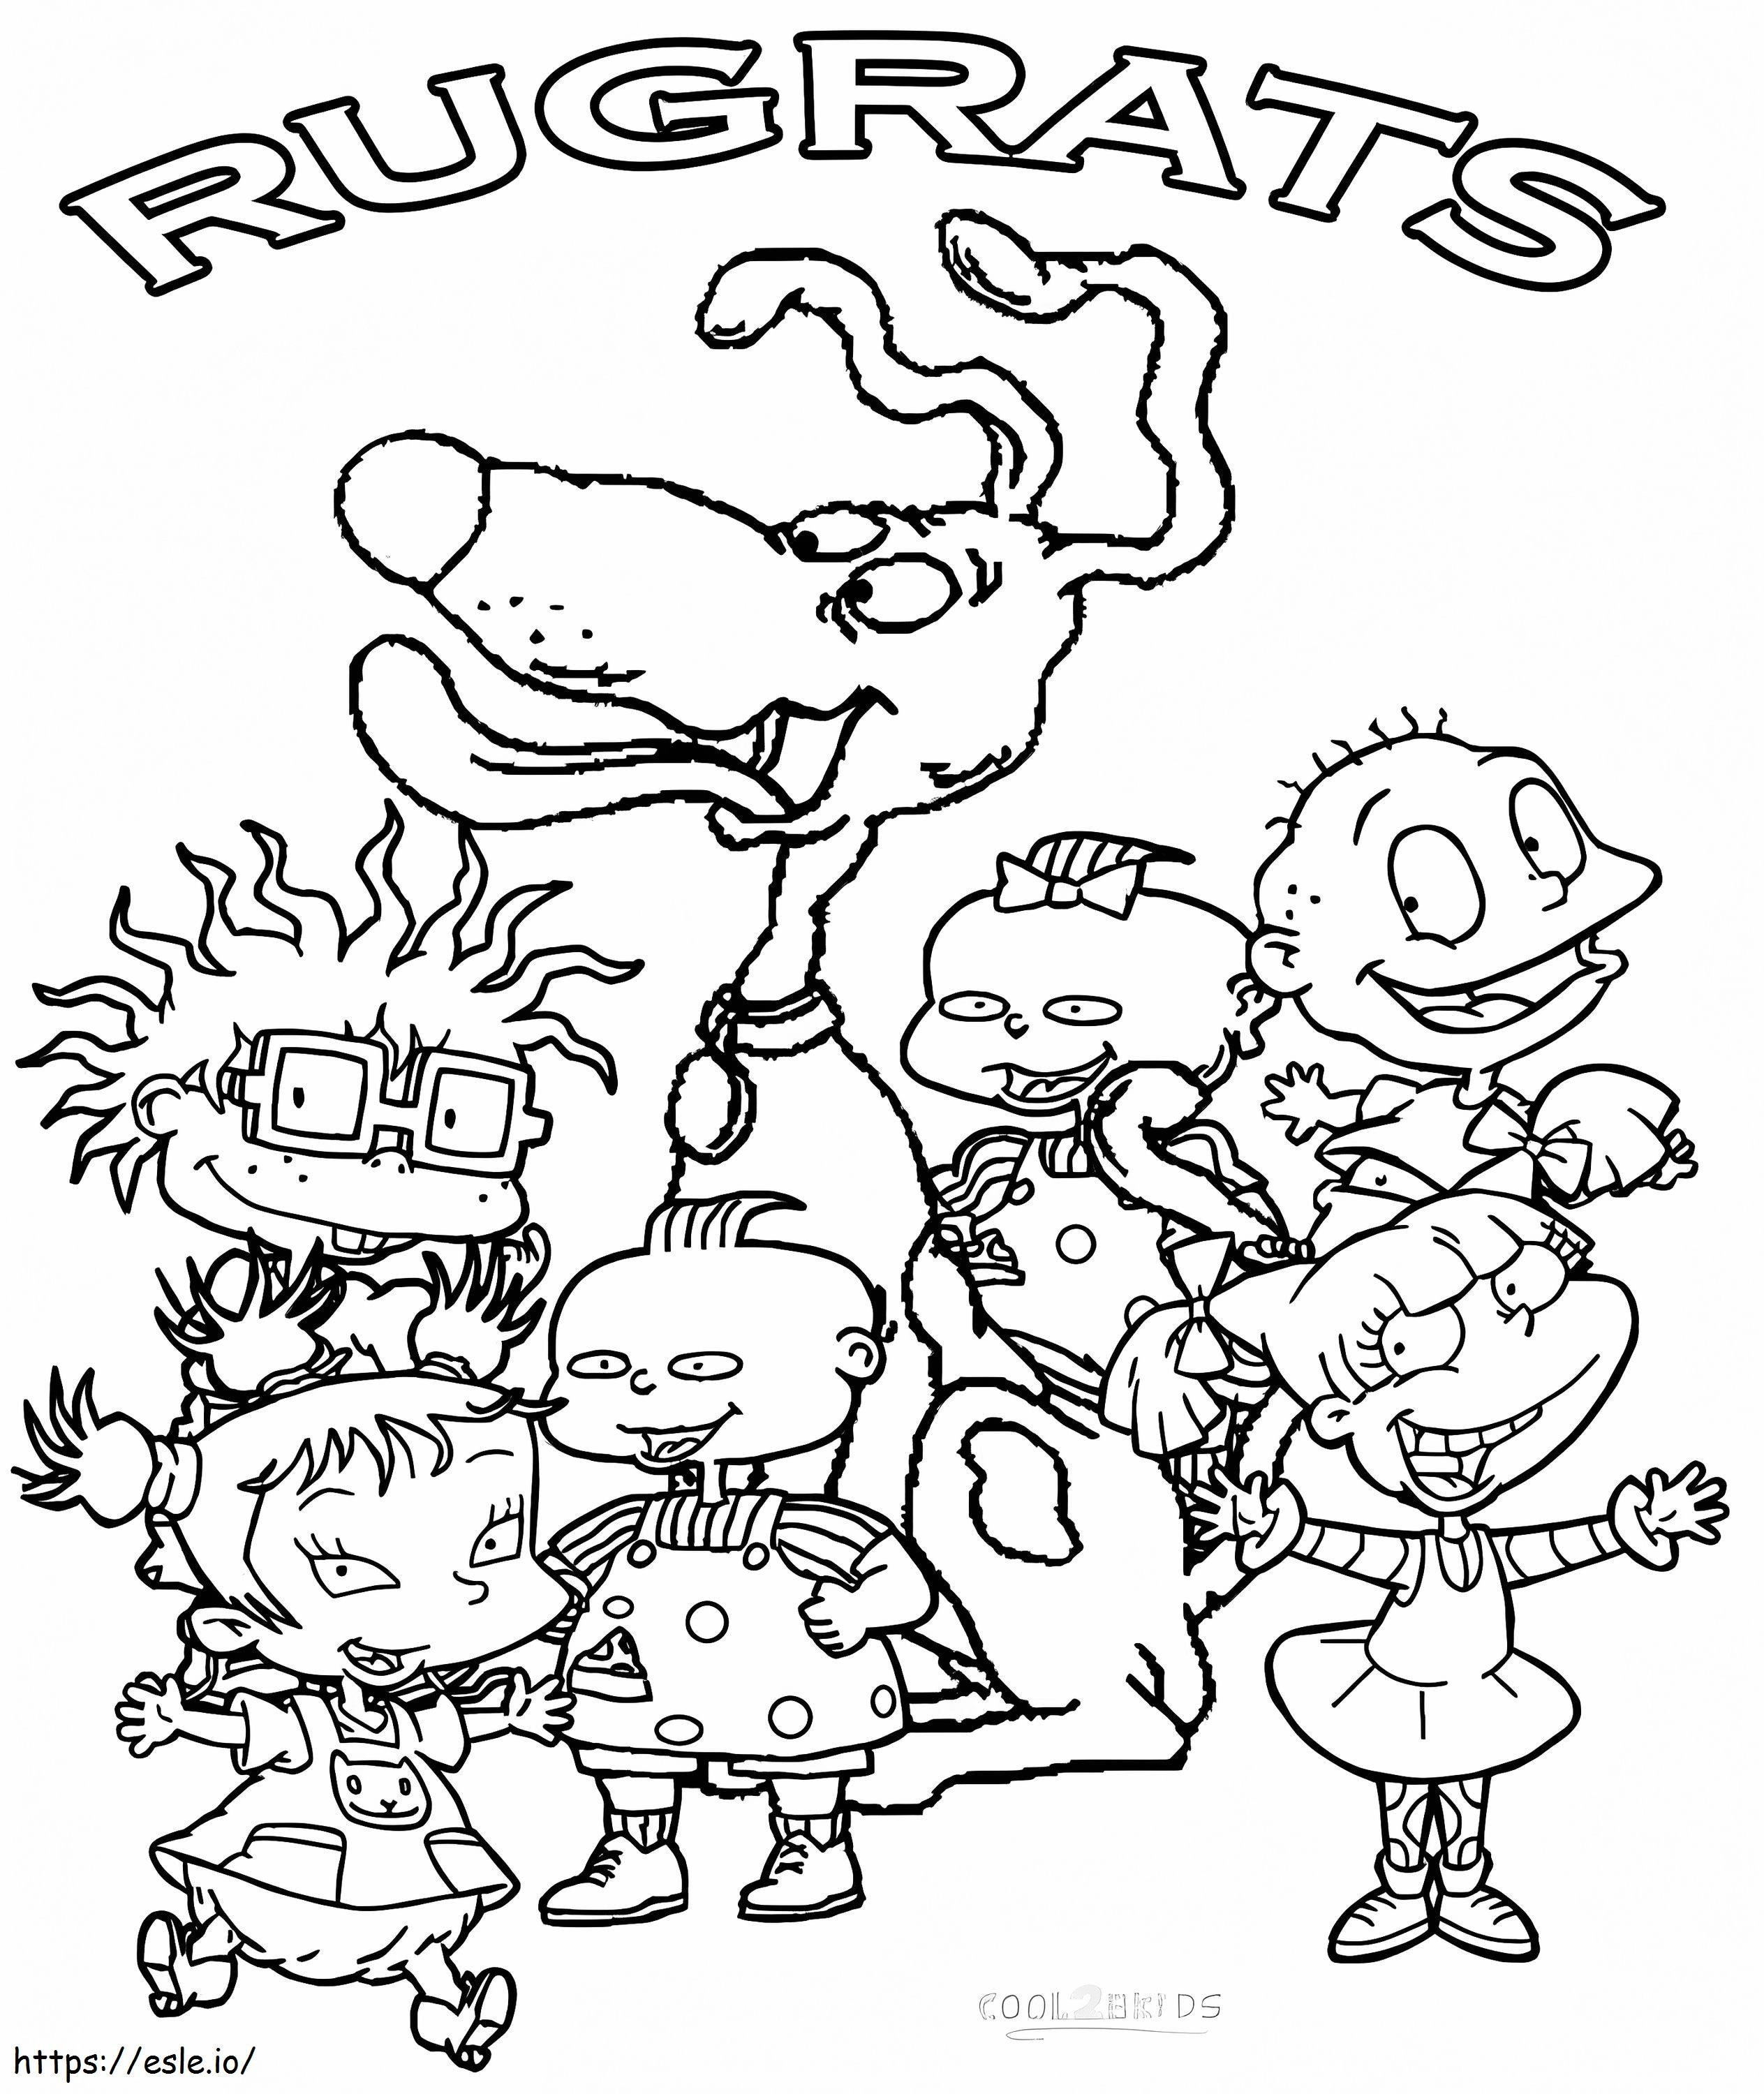 Personaje Rugrats de colorat